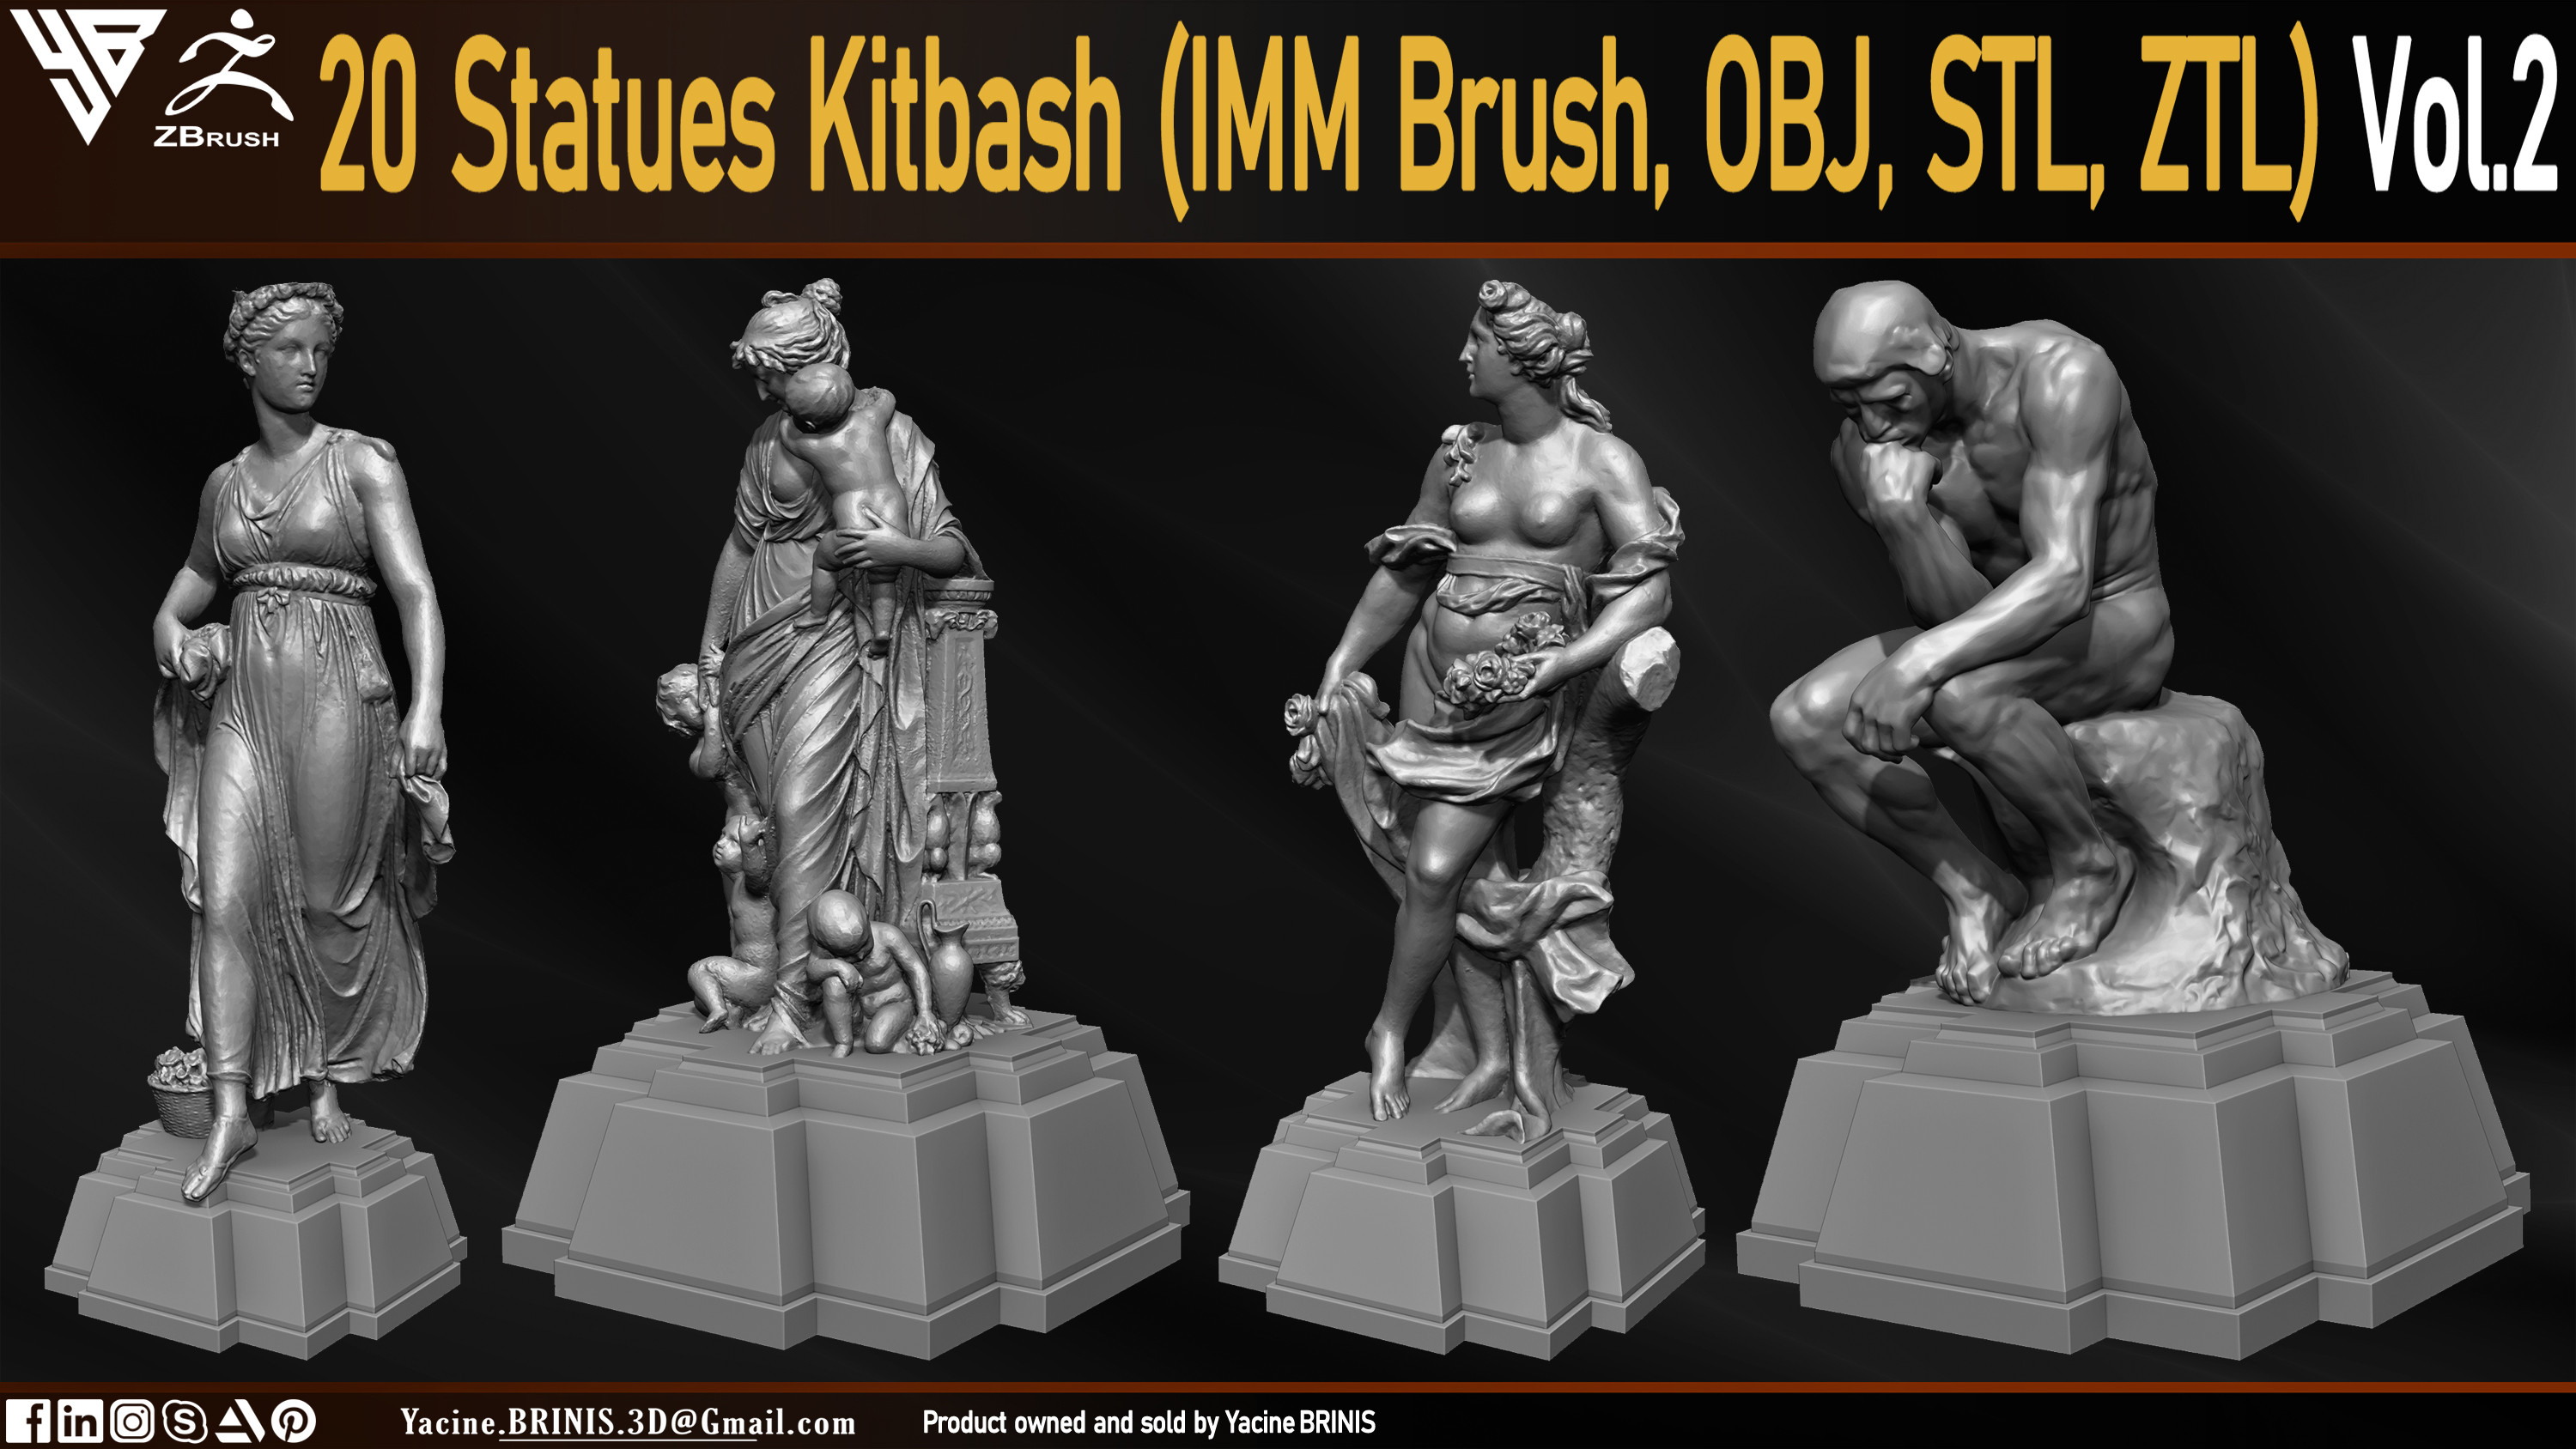 Statues Kitbash by yacine brinis Set 08